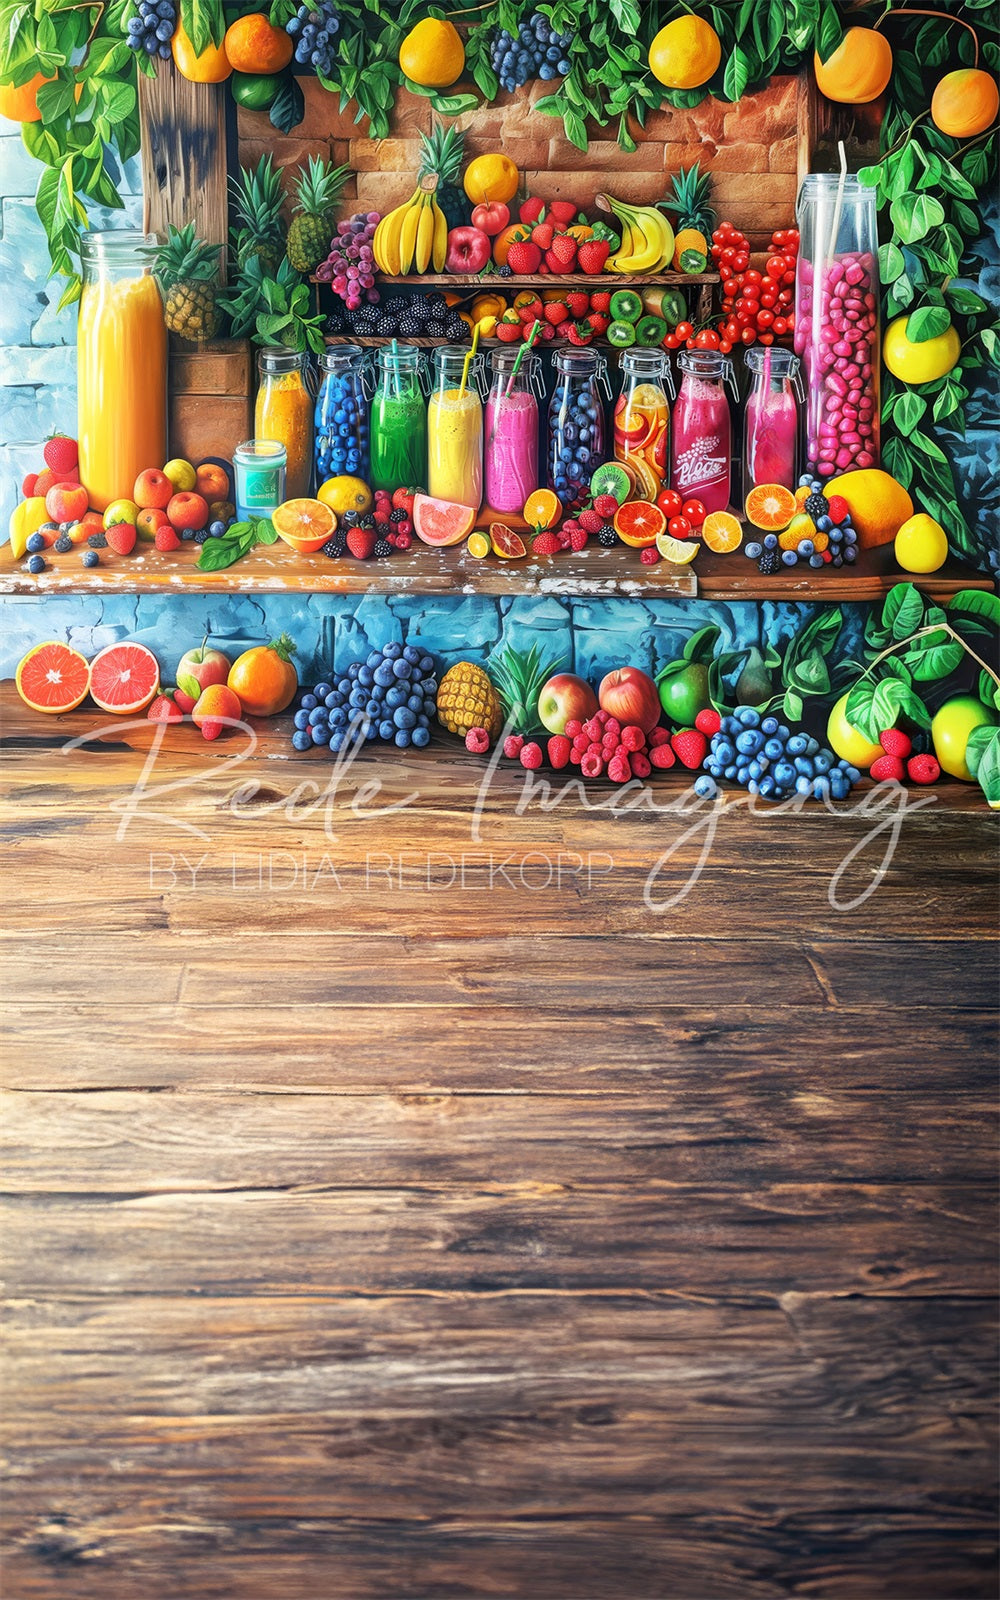 Sfondo del negozio di frutta colorato Sweep Summer progettato da Lidia Redekopp